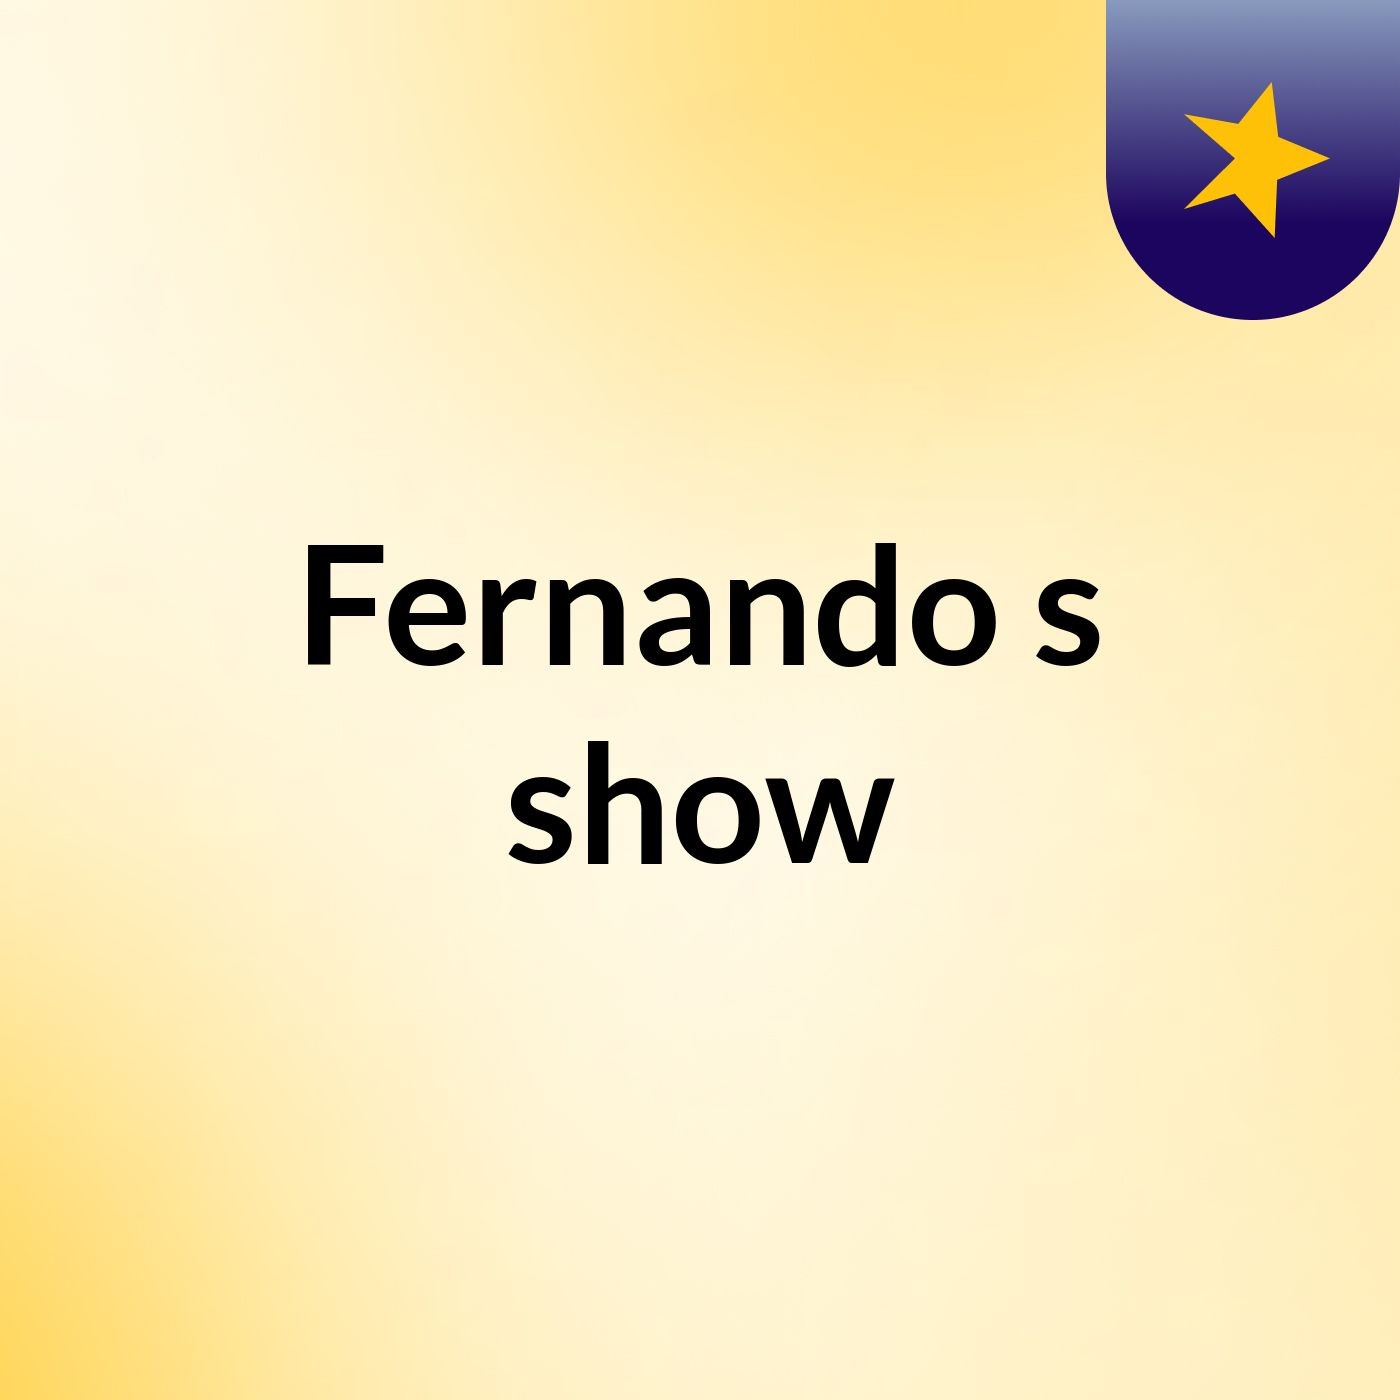 Fernando's show